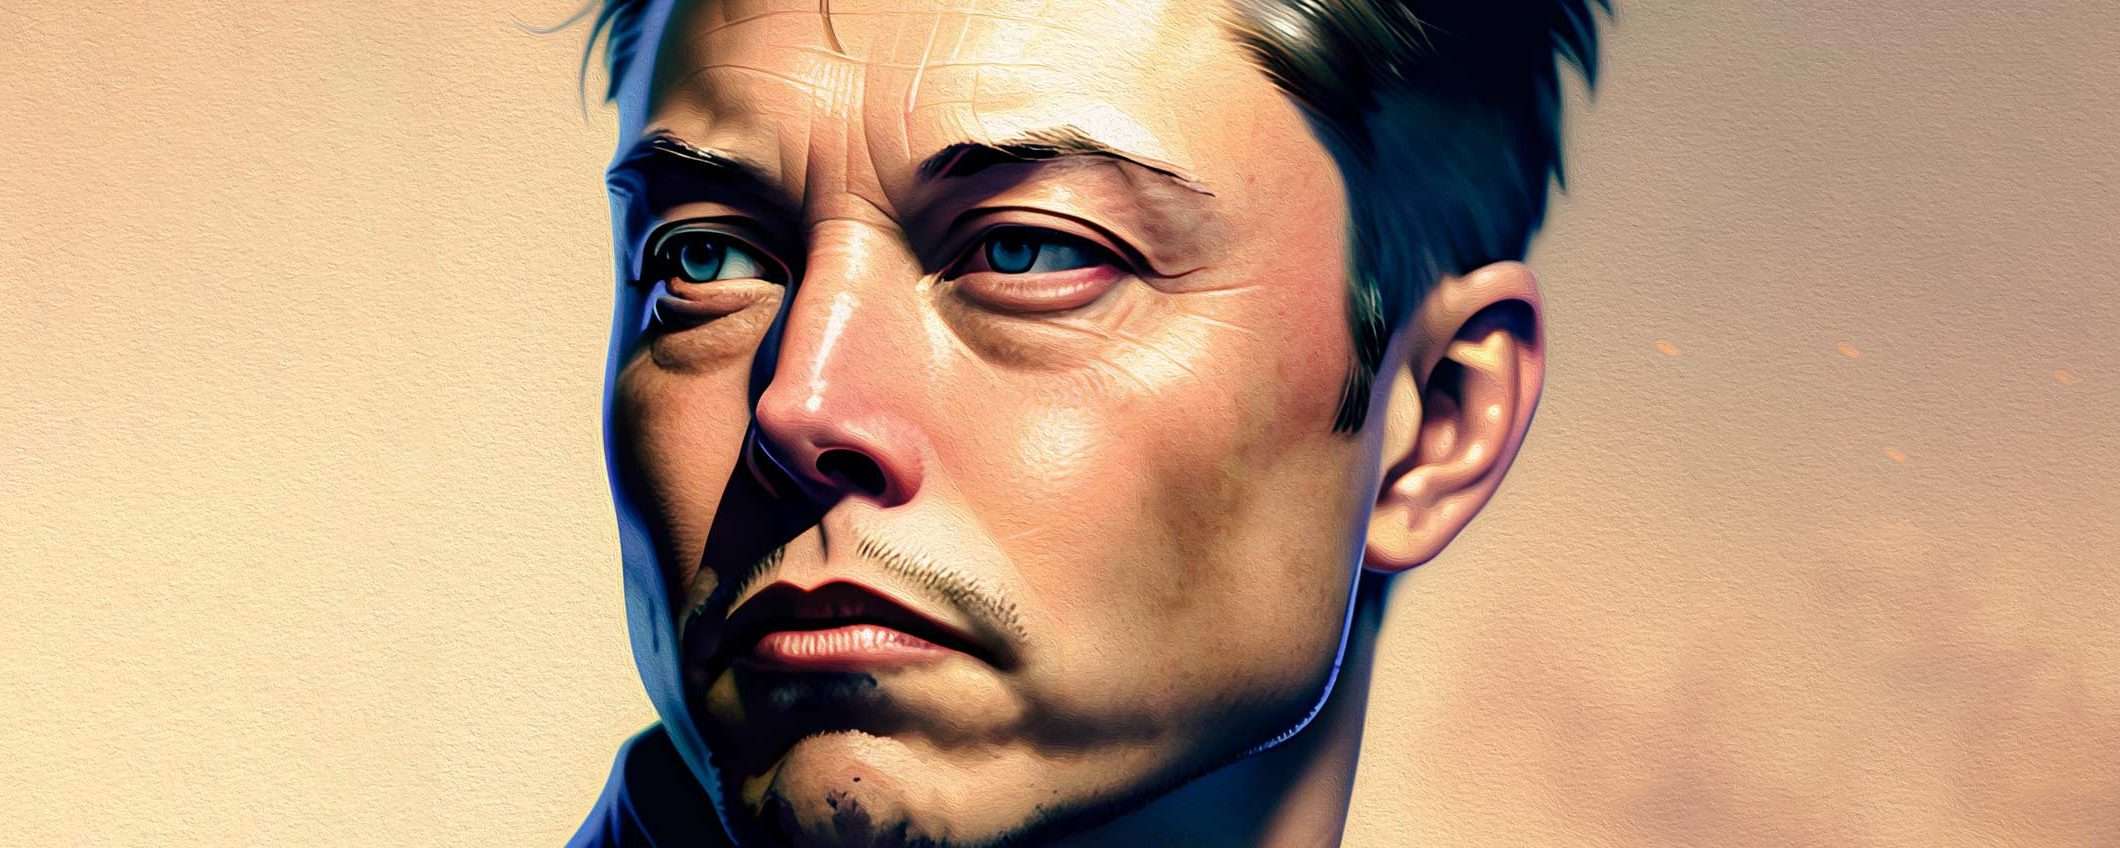 Elon Musk risponde al WSJ sull'uso di droghe